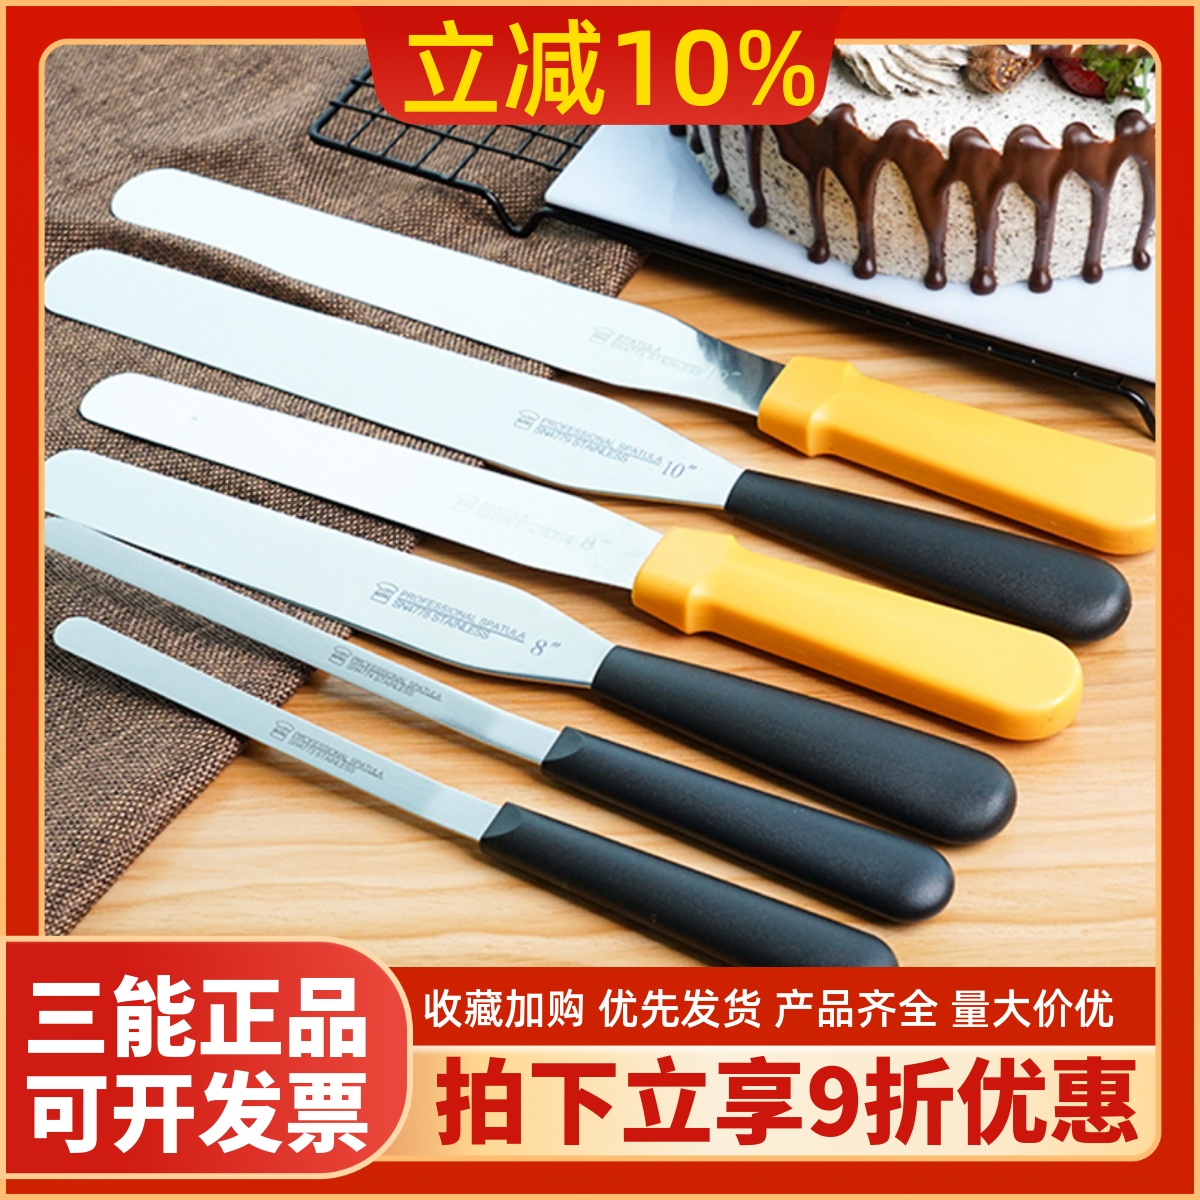 三能抹刀蛋糕奶油抹面刀裱花小抹刀刮刀脱模刀sn4774抹刀烘焙工具-封面